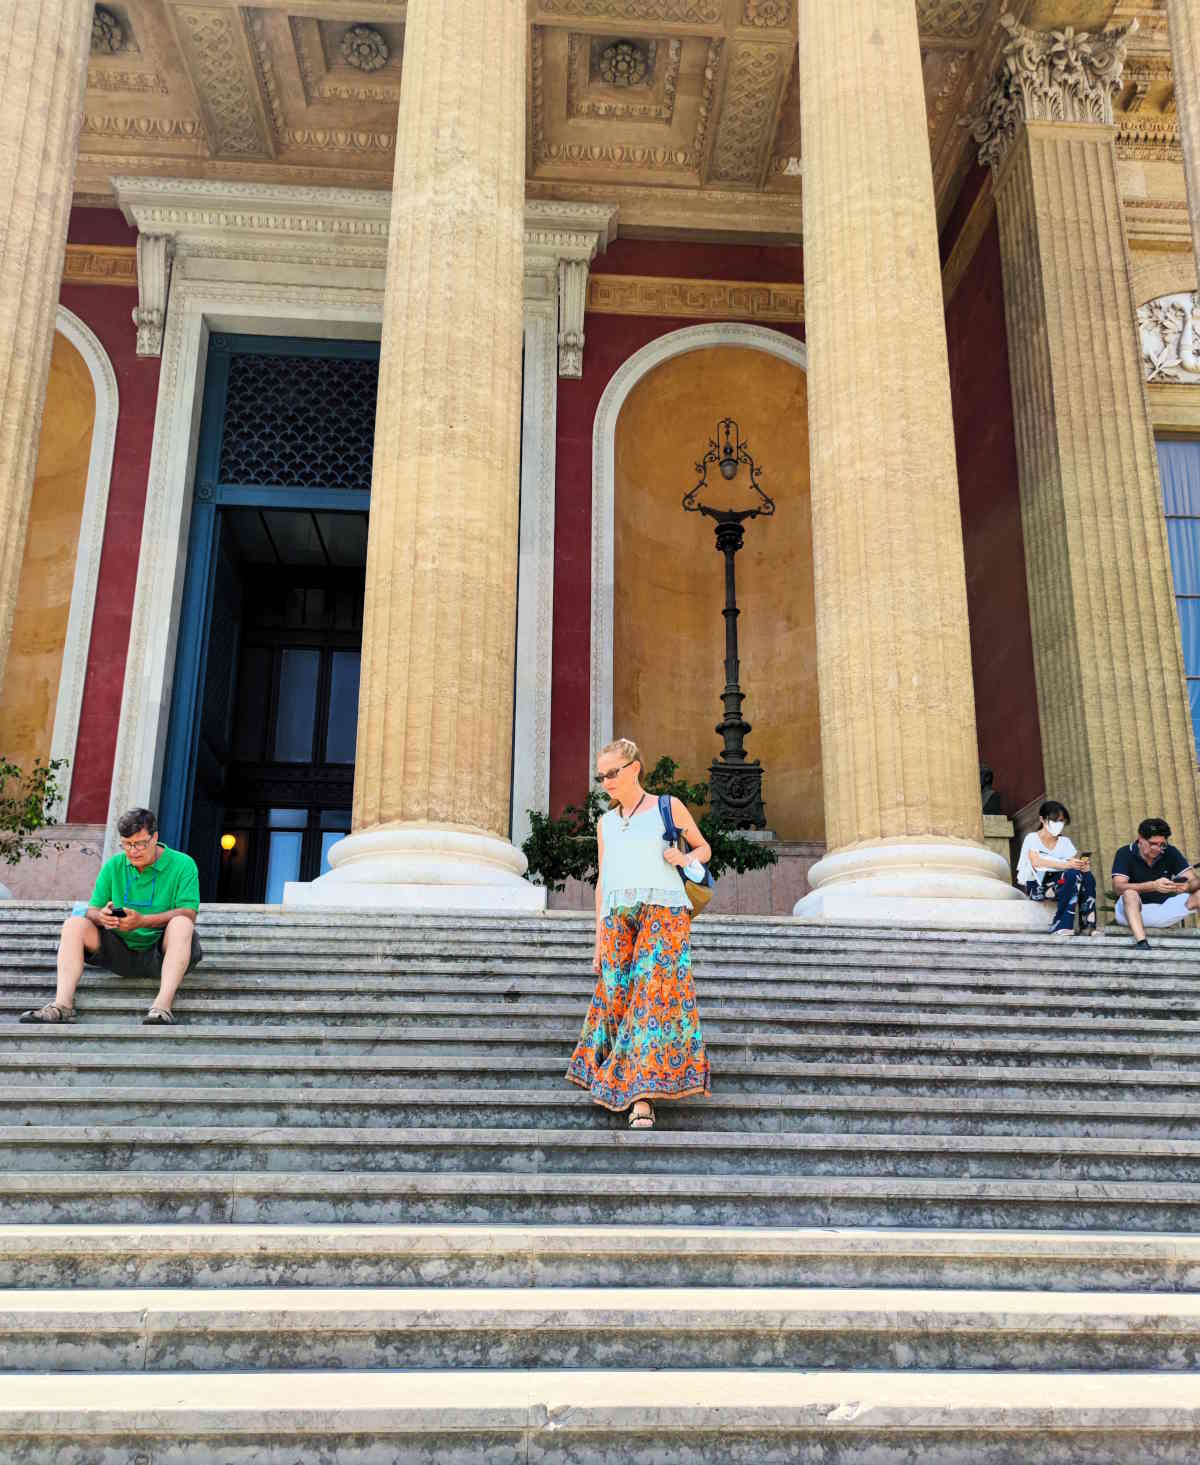 La bella scalinata del Teatro Massimo in Piazza Verdi a Palermo